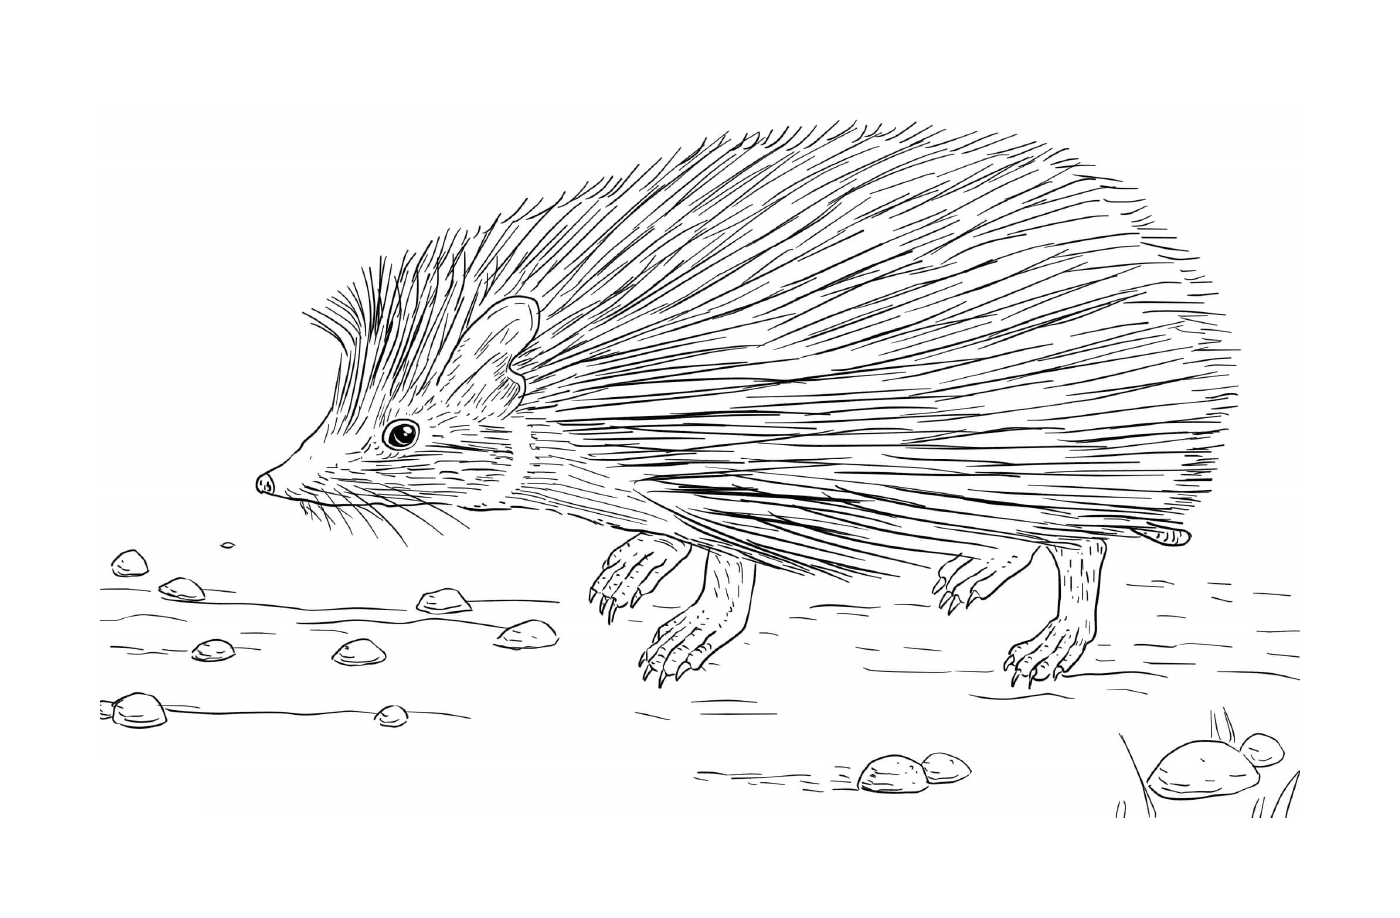  Hedgehog na natureza 